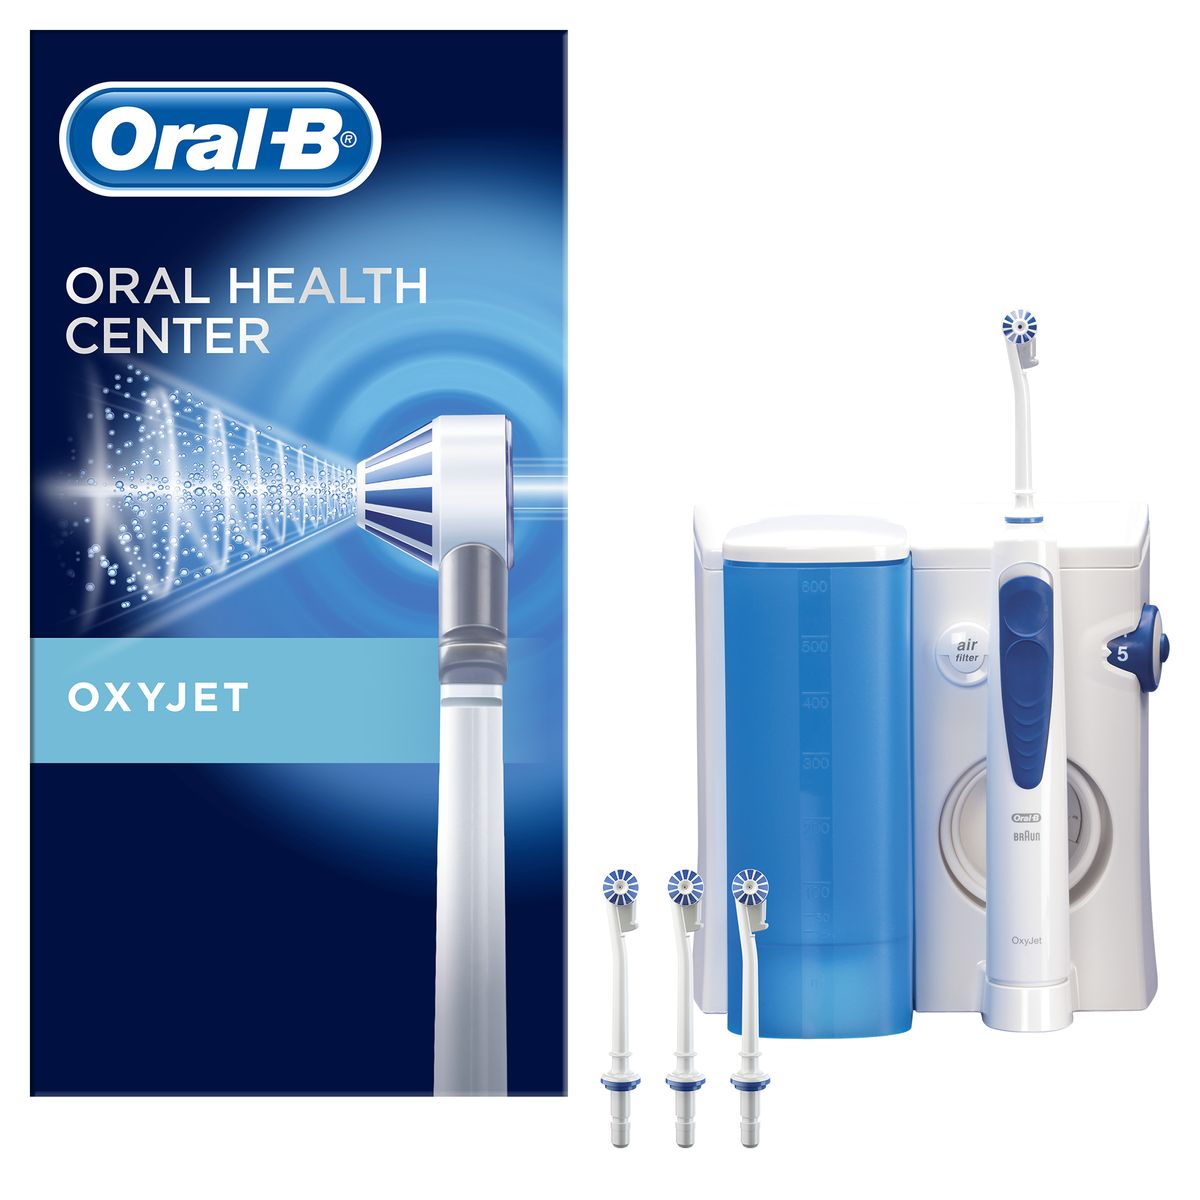 Oral-B Professional Care OxyJet Oral Care